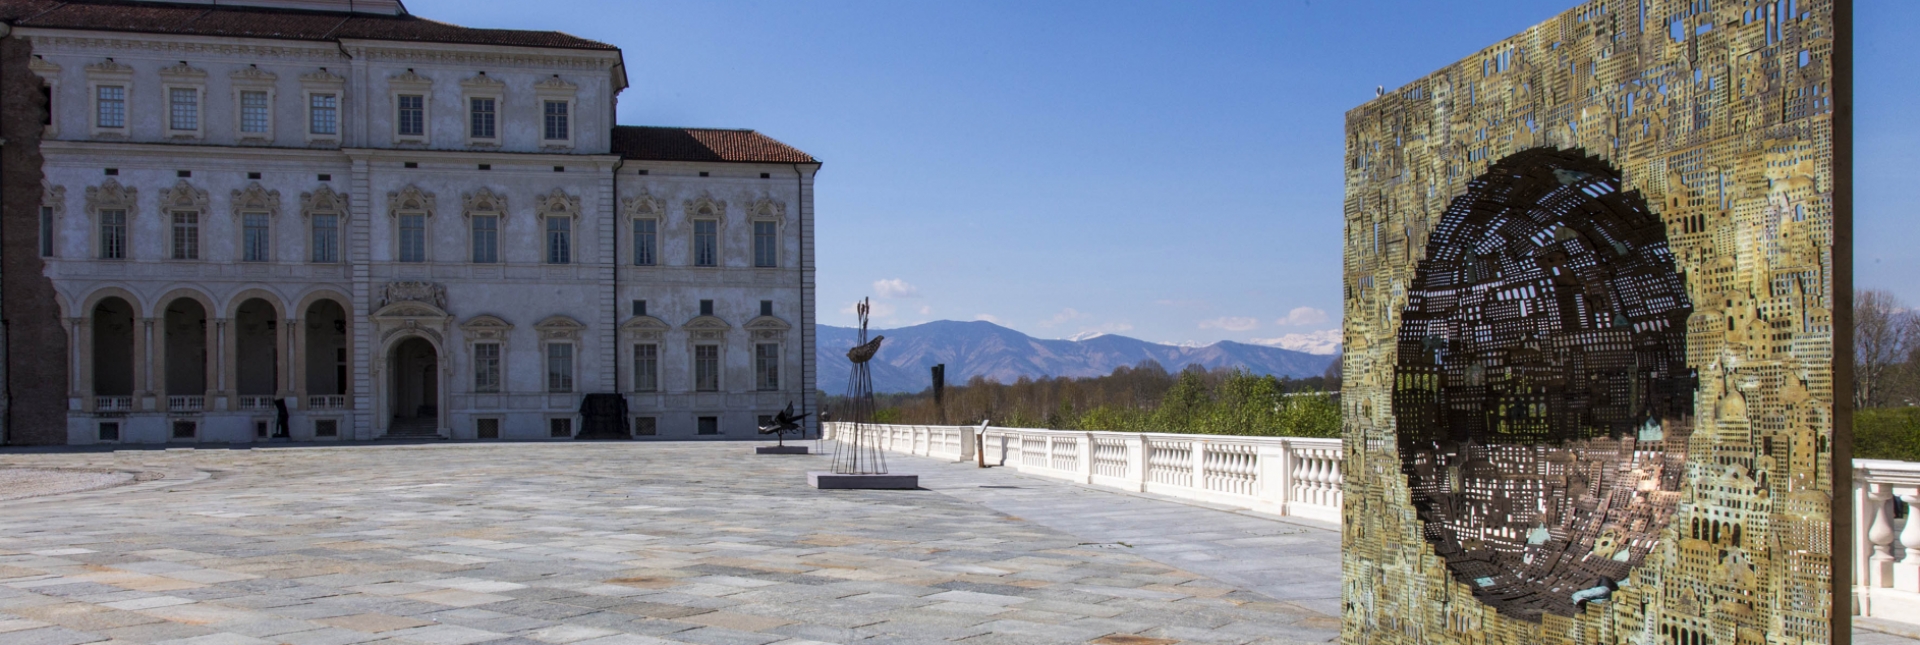 La Venaria Reale: Landscape, History and Contemporary Art